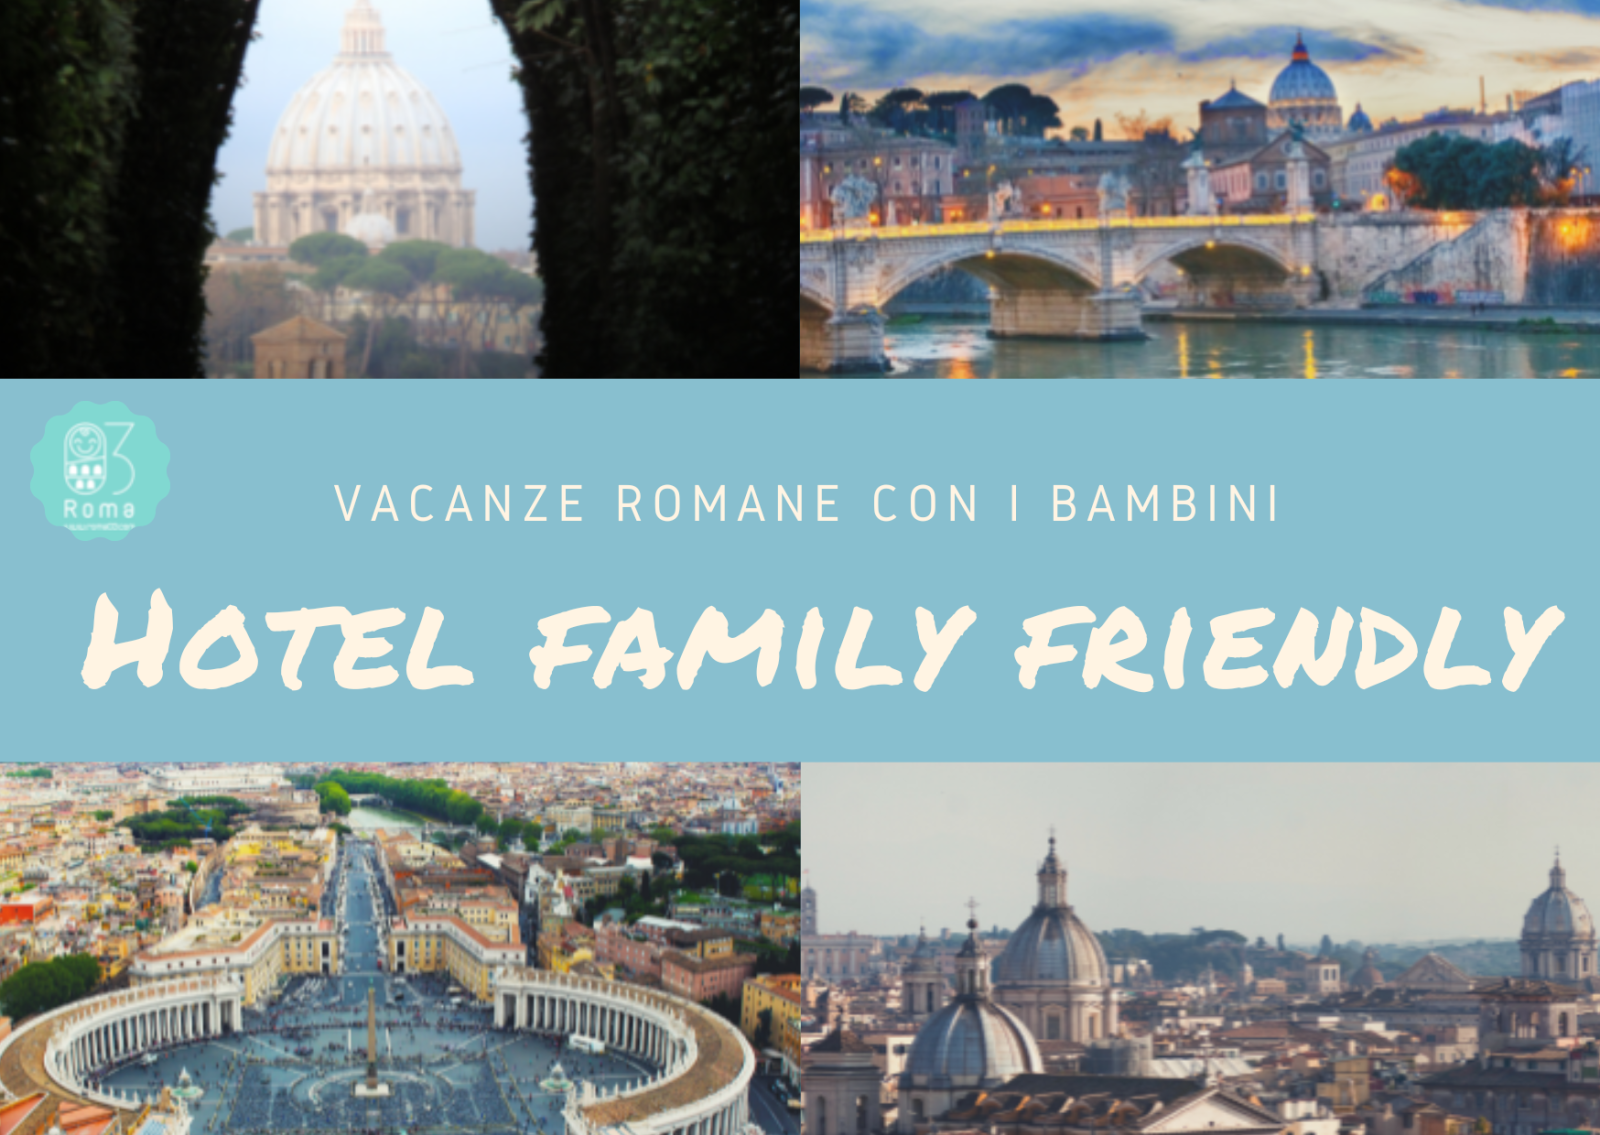 Vacanze romane con i bambini alberghi family friendly